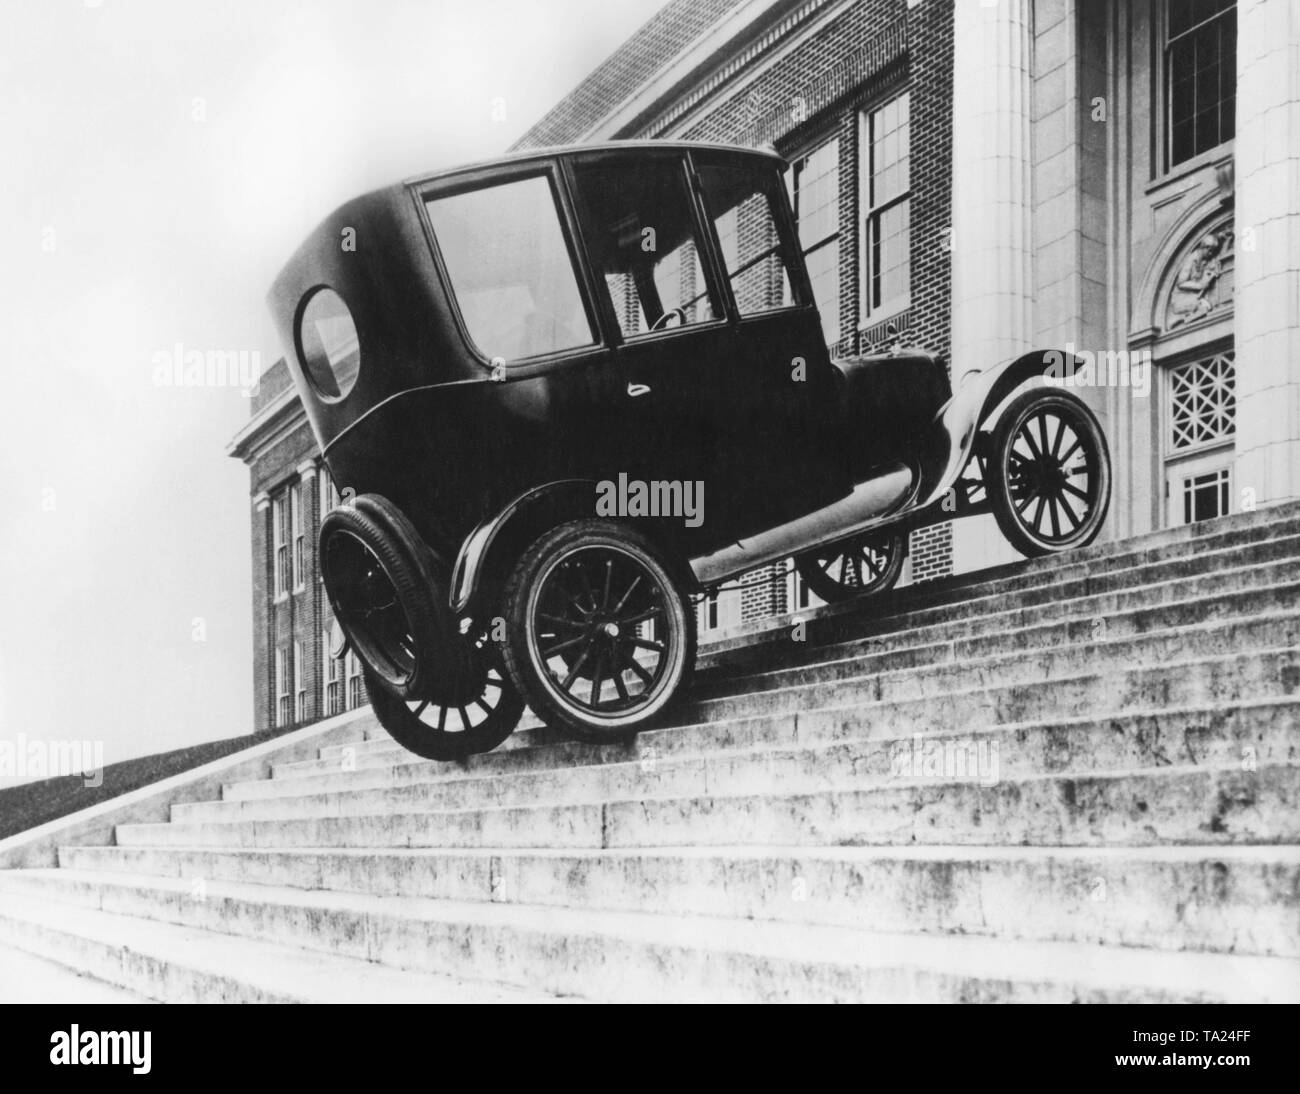 Afin d'appuyer le slogan "Le modèle T durs partout" devant la cour, un employé de Ford conduit un 'Tin Lizzy' sur un escalier directement en face de l'entrée de la Cour des bâtiments. Banque D'Images